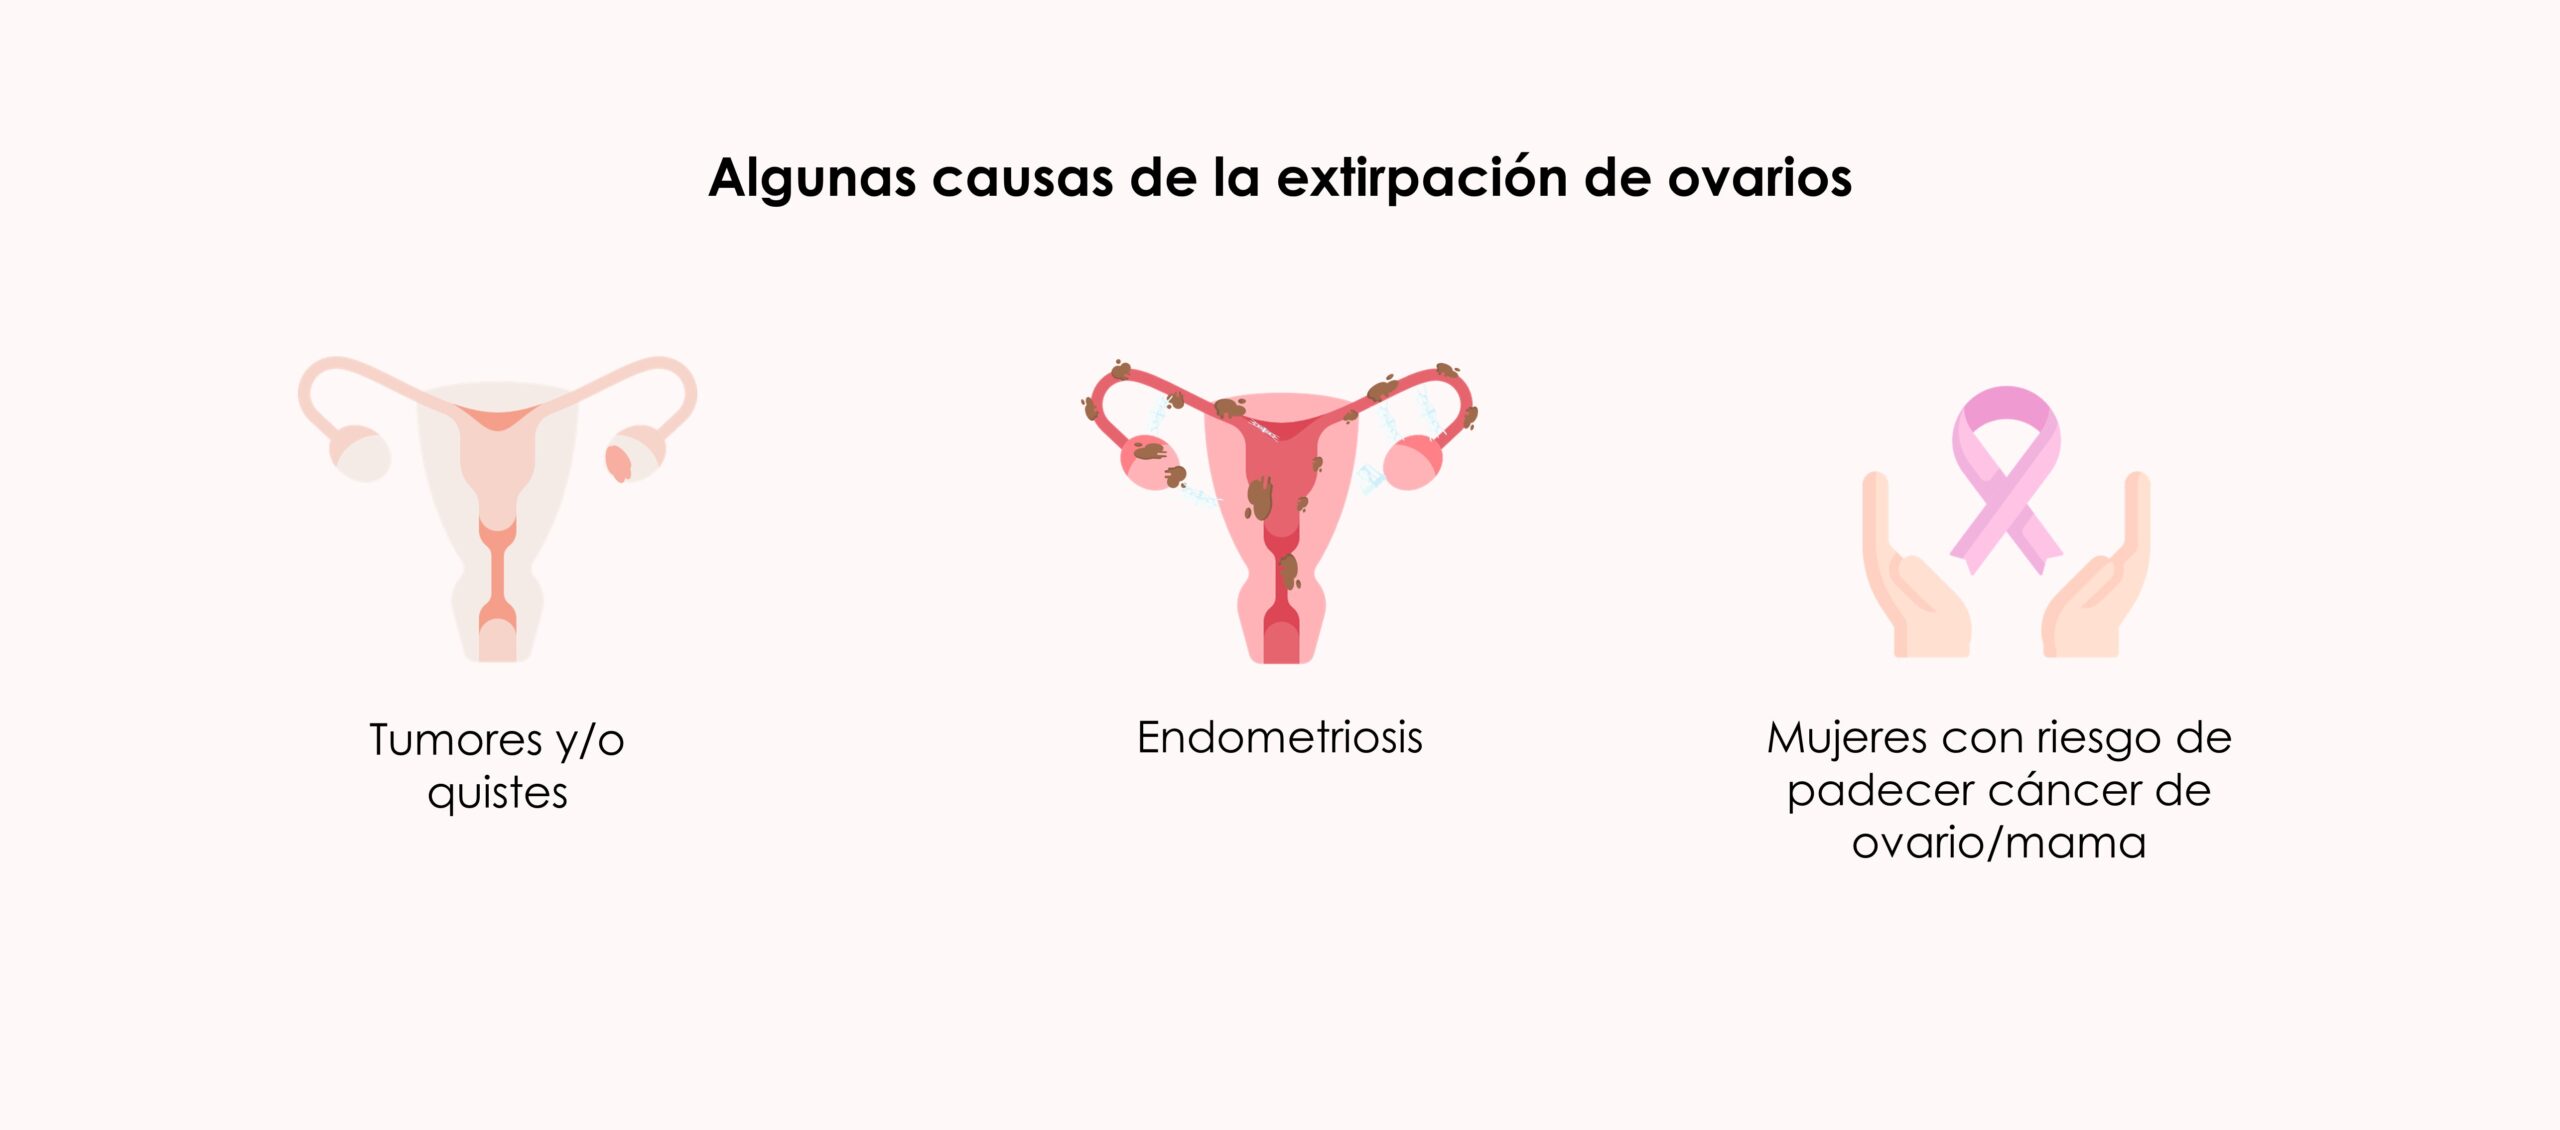 Algunas causas de la extirpación de ovarios (ooforectomía)